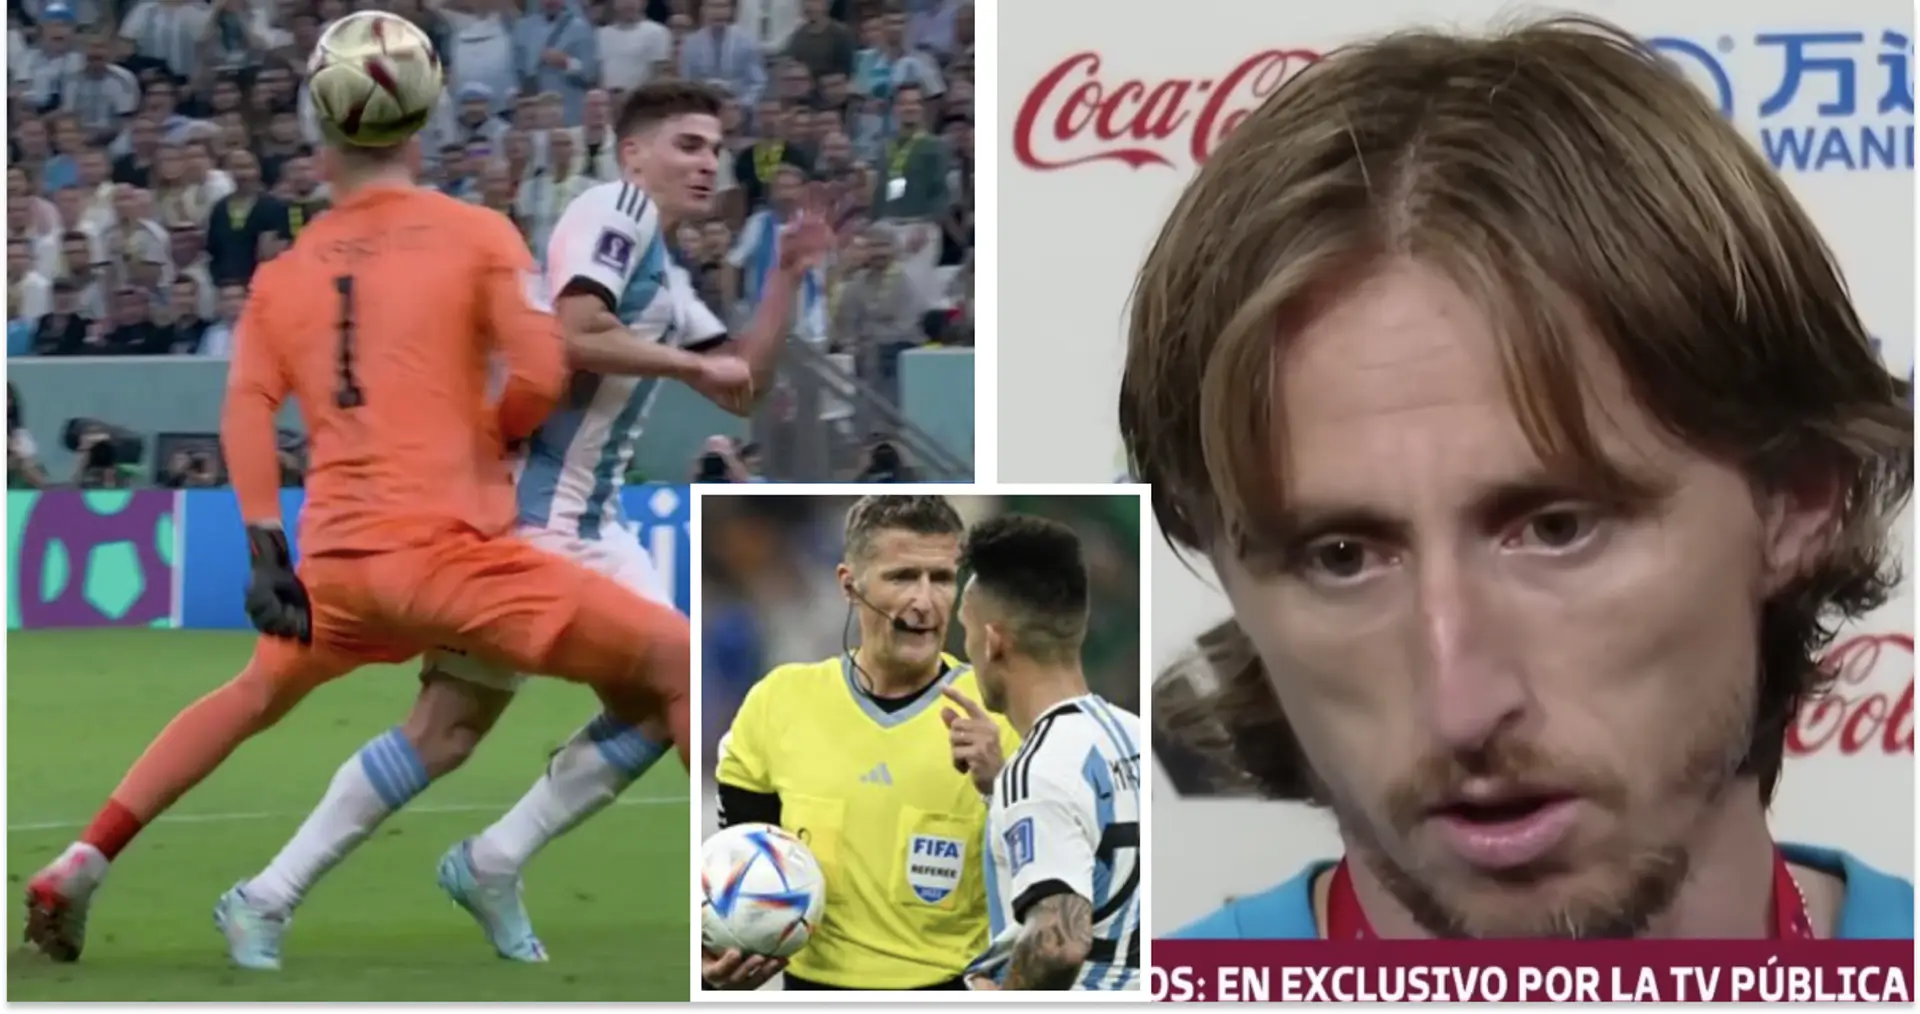 "Un désastre": Luka Modric critique l'arbitre après l'élimination de la Croatie en Coupe du monde